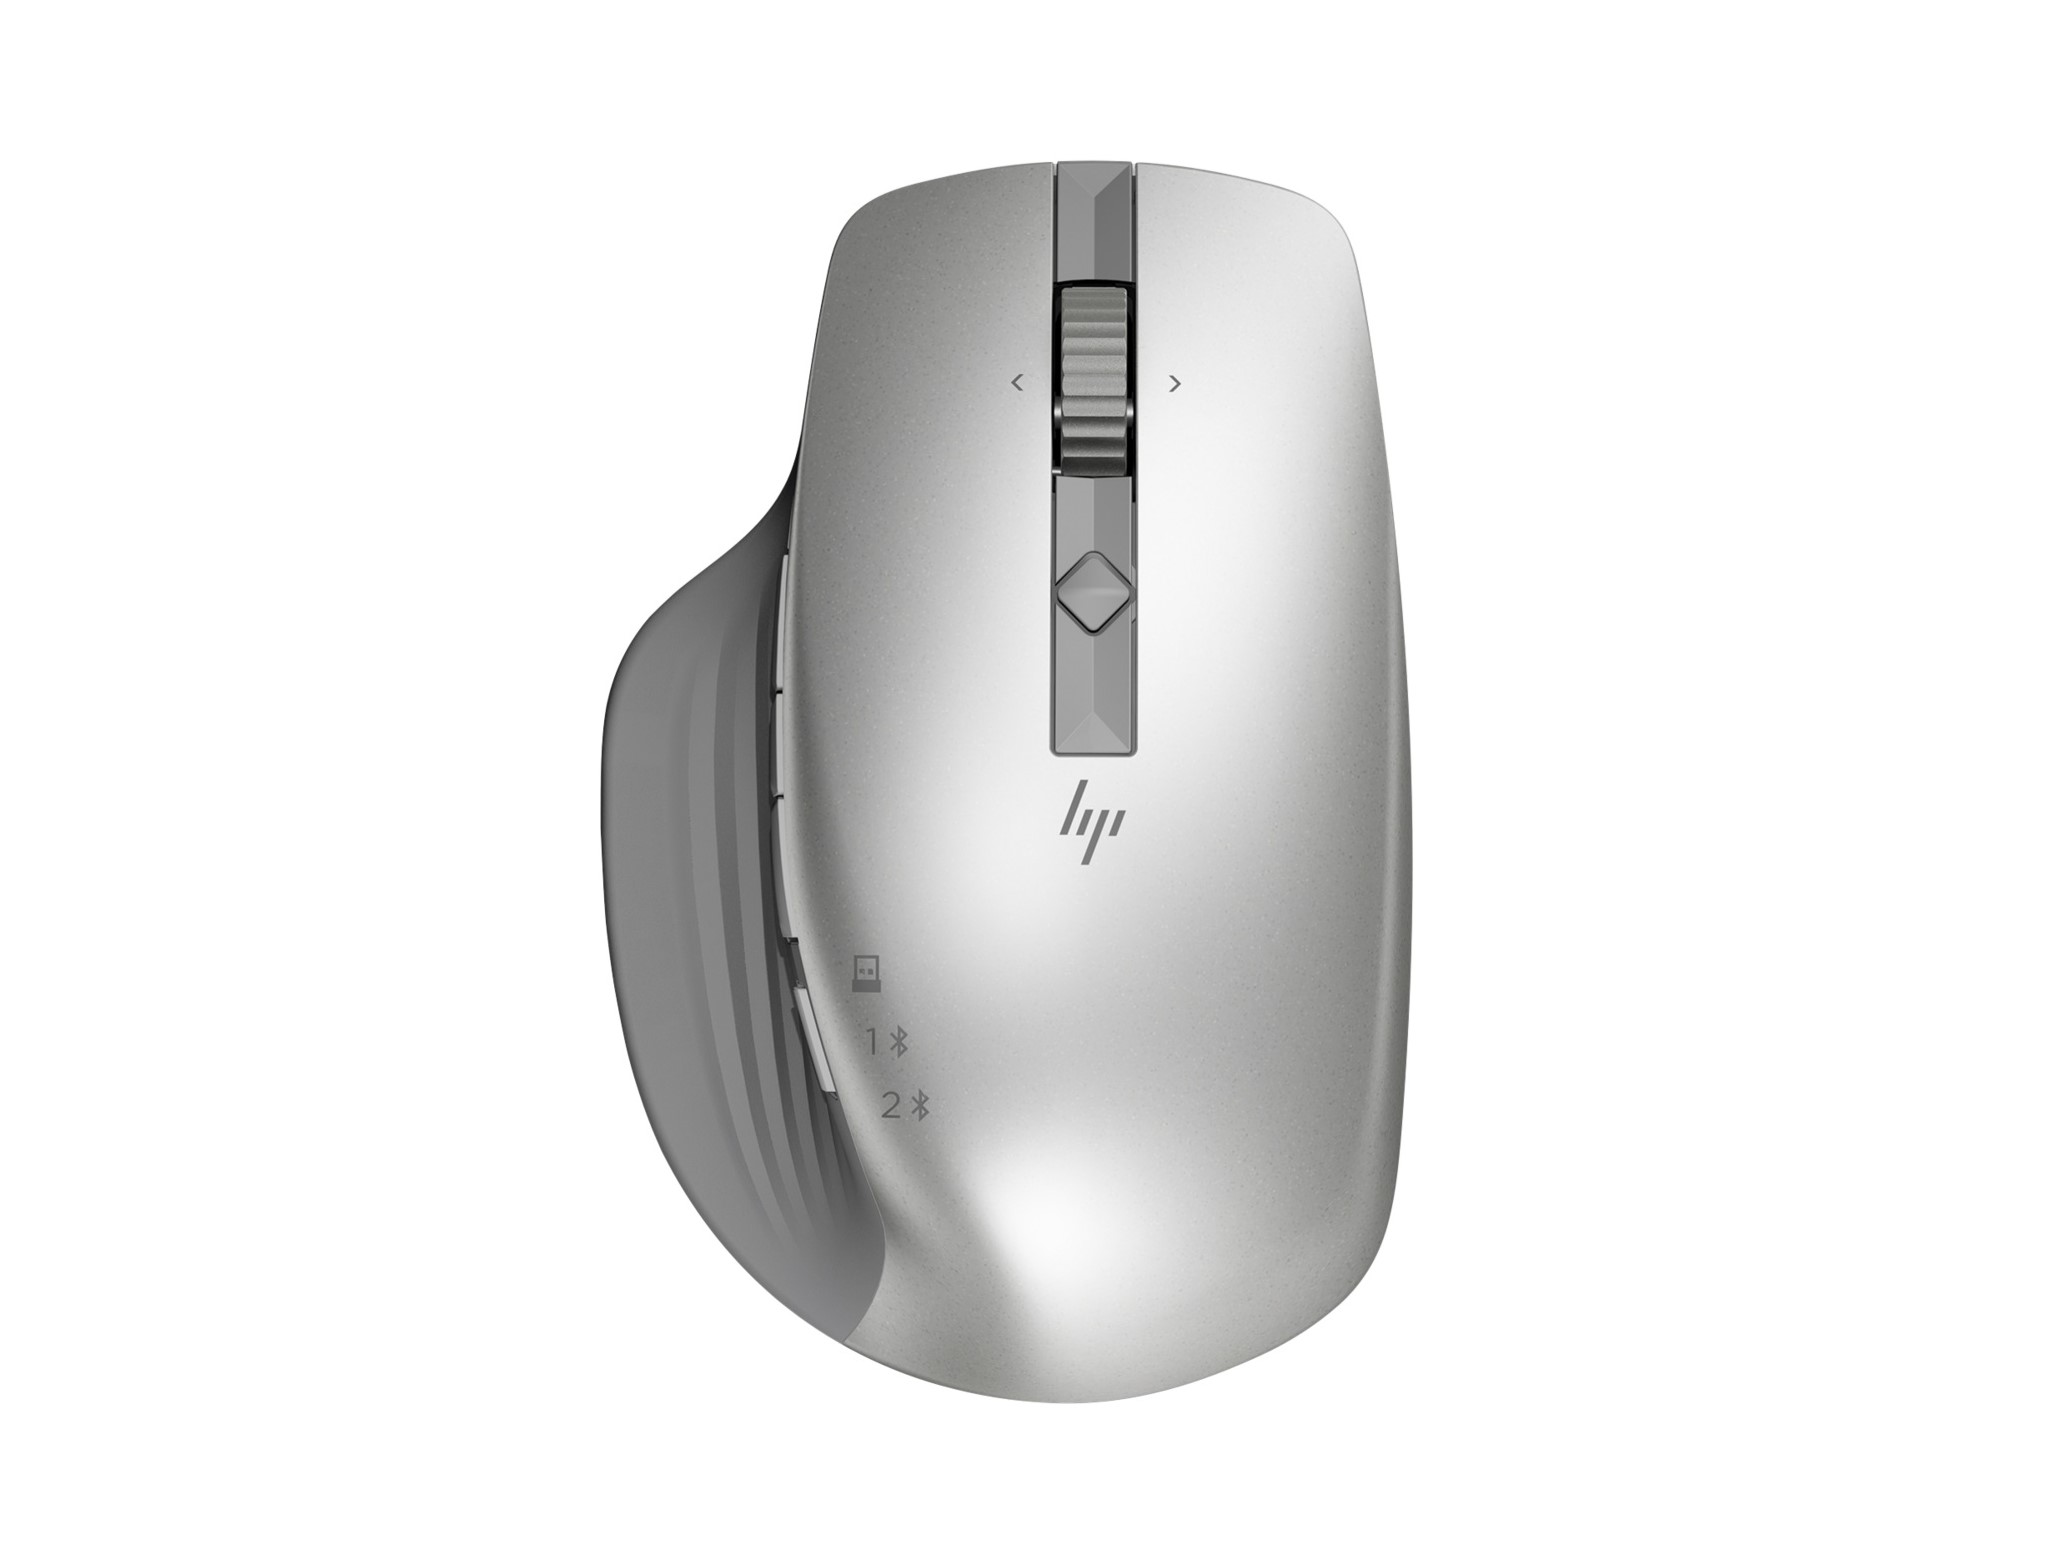 Imagem do mouse sem fio HP 930 Creator.